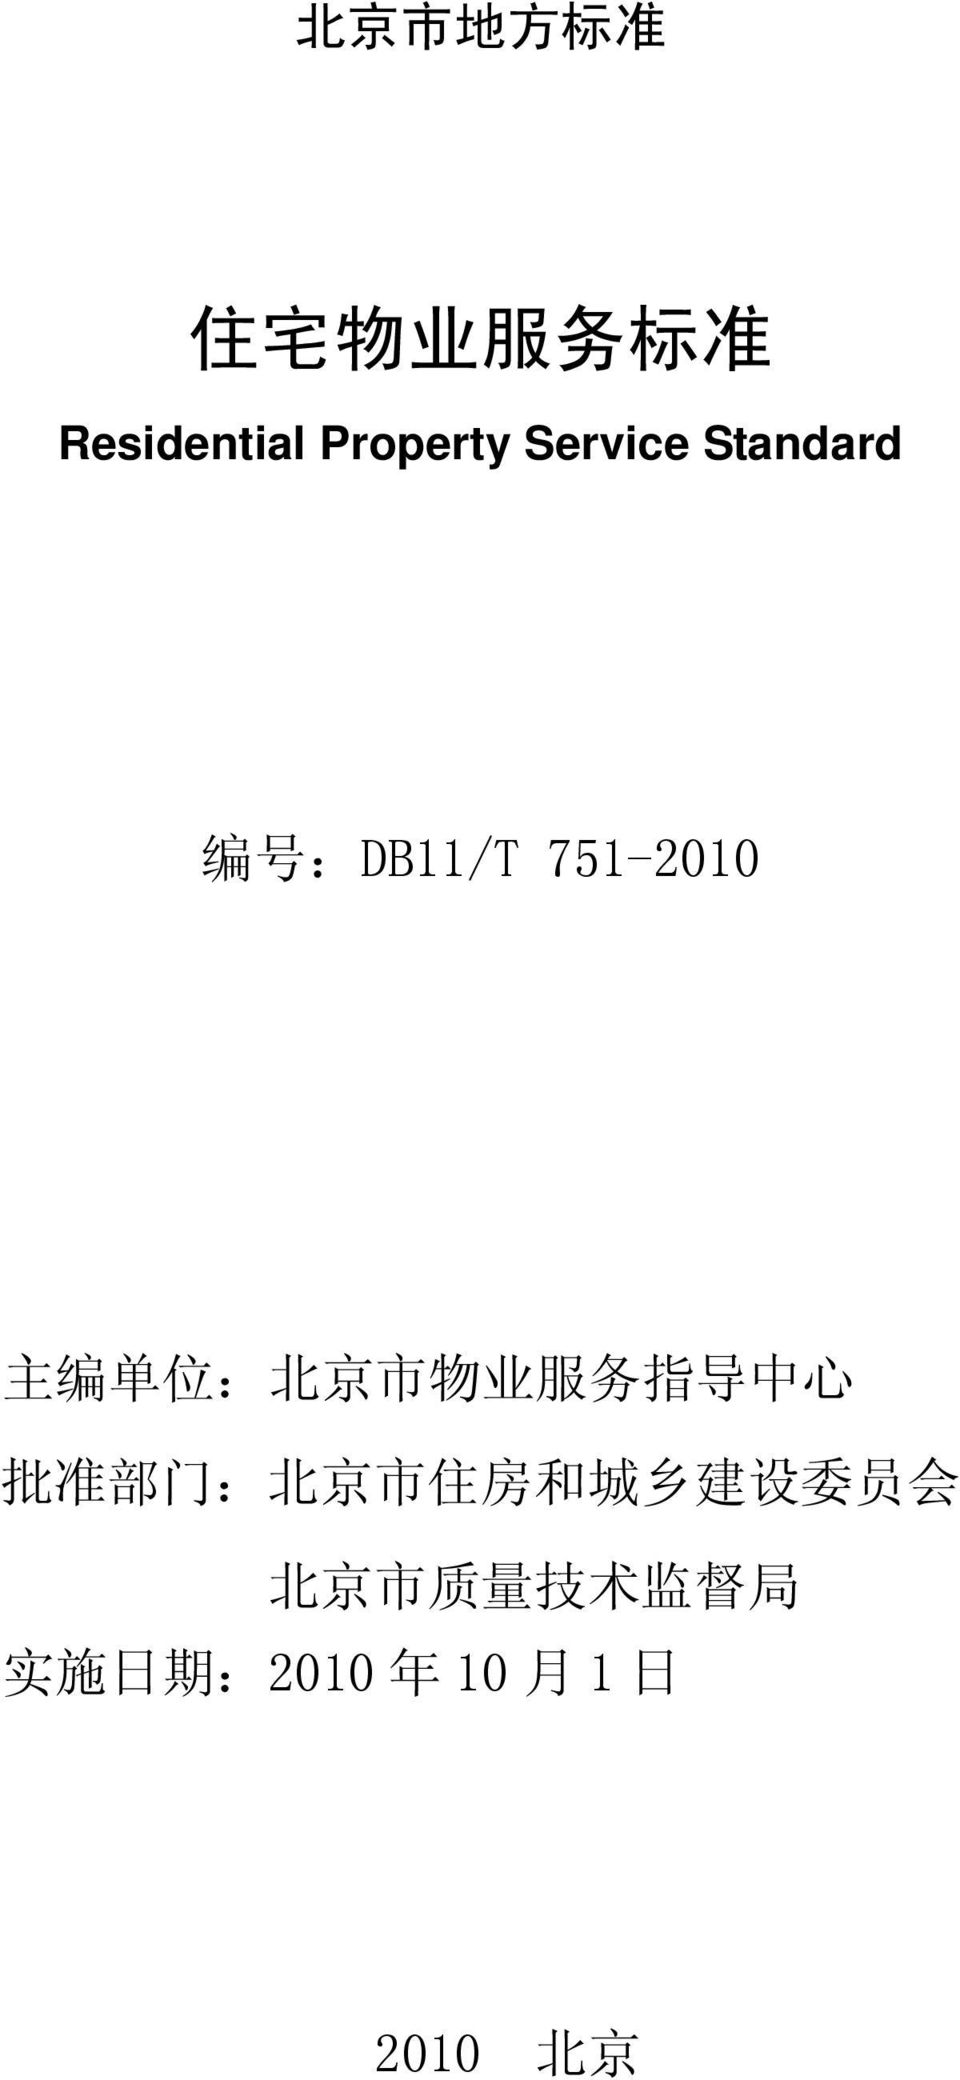 市 物 业 服 务 指 导 中 心 批 准 部 门 : 北 京 市 住 房 和 城 乡 建 设 委 员